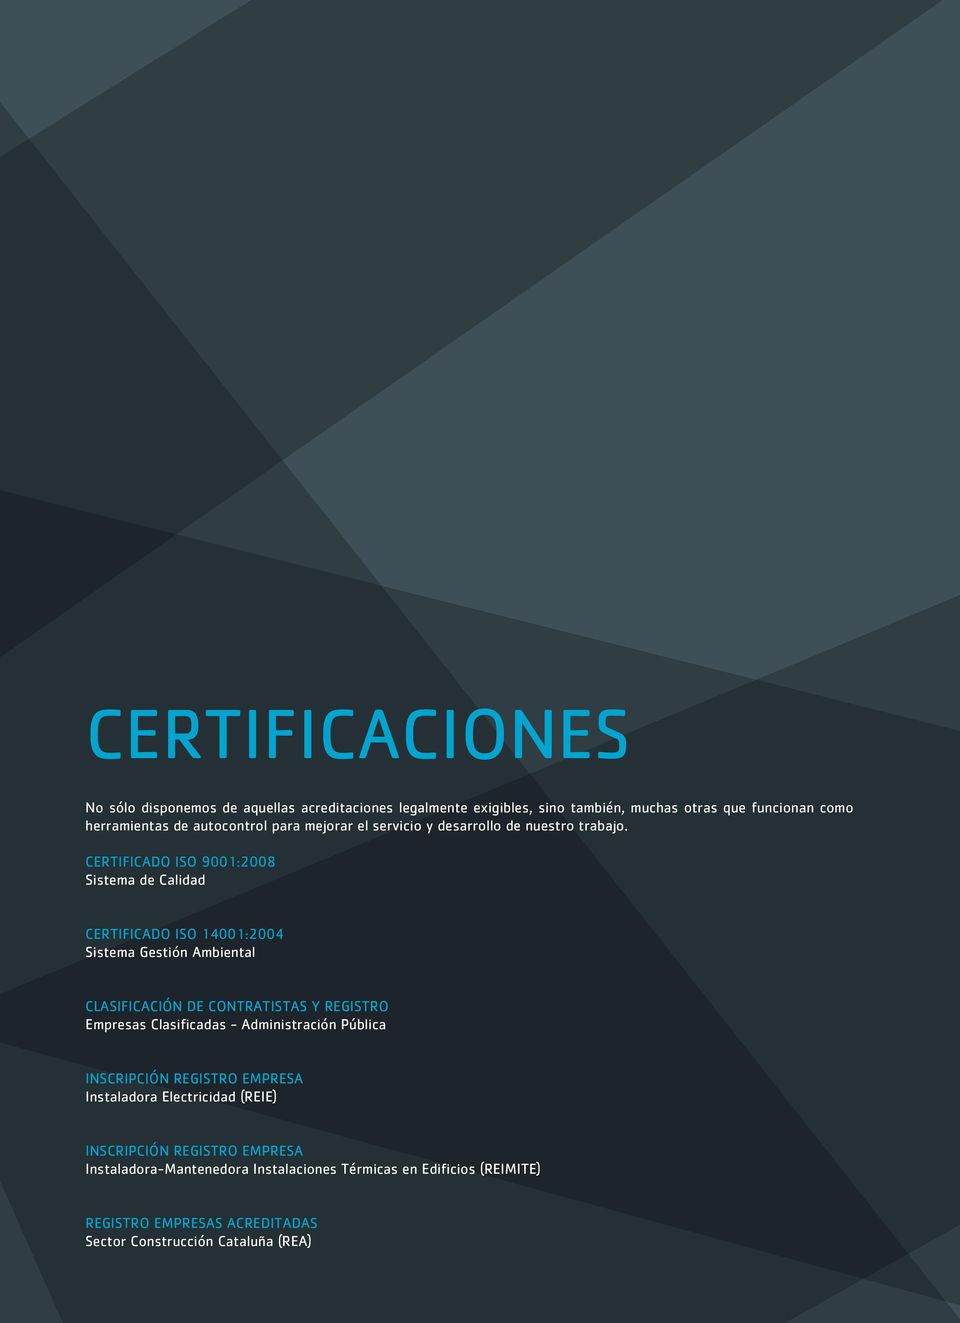 Certificado ISO 9001:2008 Sistema de Calidad Certificado ISO 14001:2004 Sistema Gestión Ambiental Clasificación de Contratistas y Registro Empresas